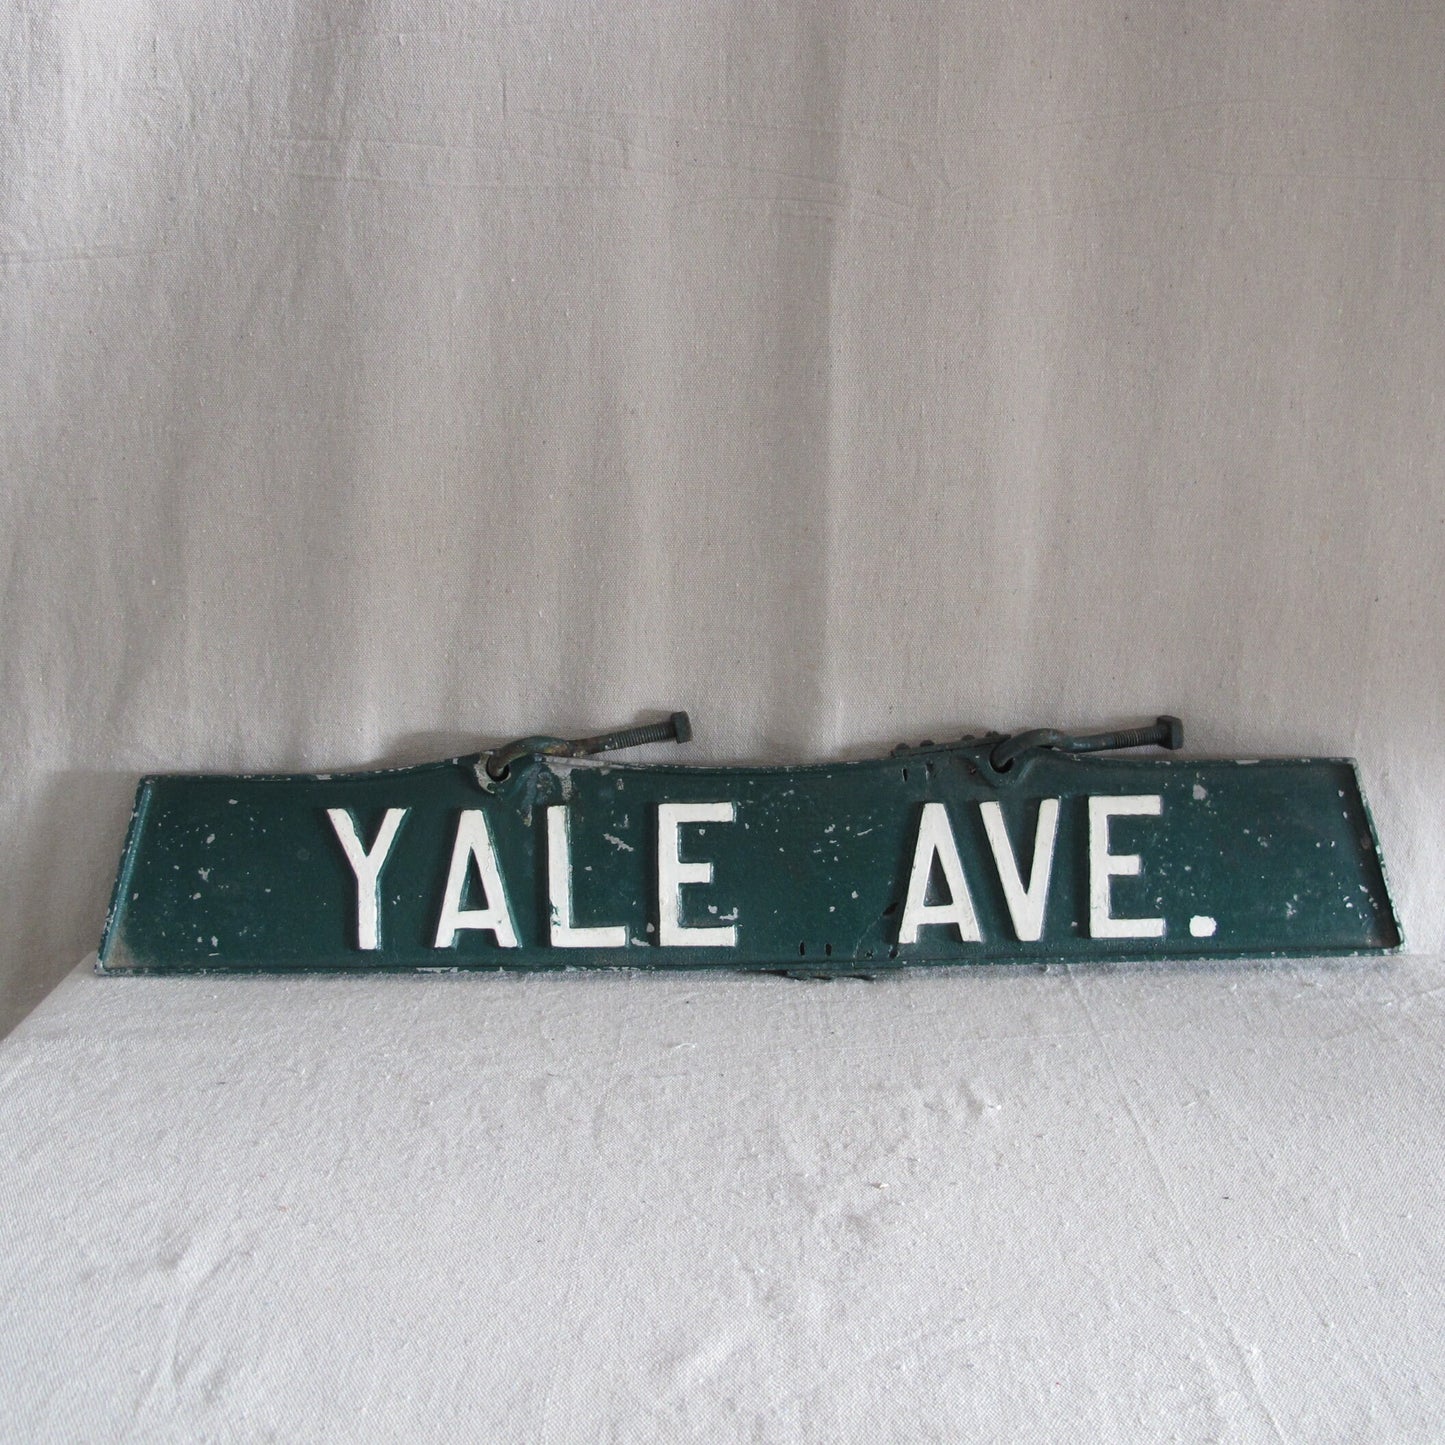 Yale Avenue Street Sign, Cast Zinc, c. 1940, period repair